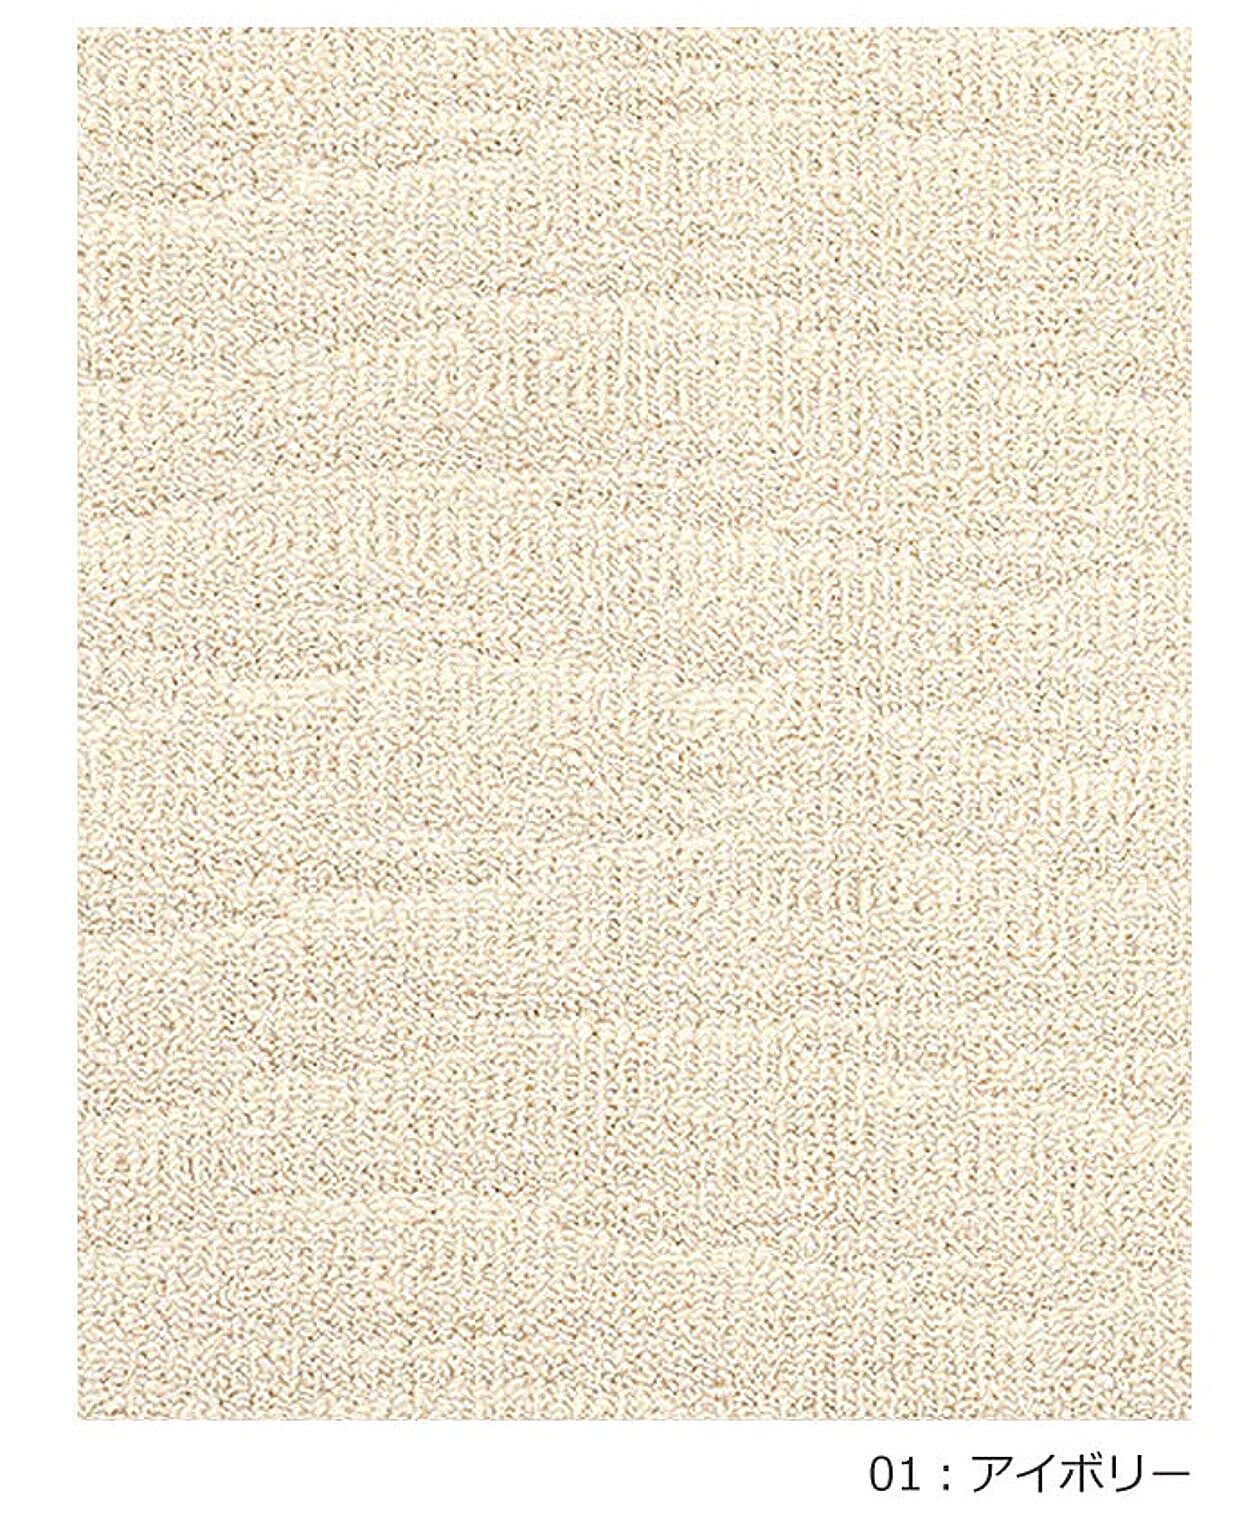 ラグ ラグマット 絨毯 日本製 カーペット 約190×190cm 北欧 デザイン 防ダニ 抗菌 prevell プレーベル ポート 引っ越し 新生活